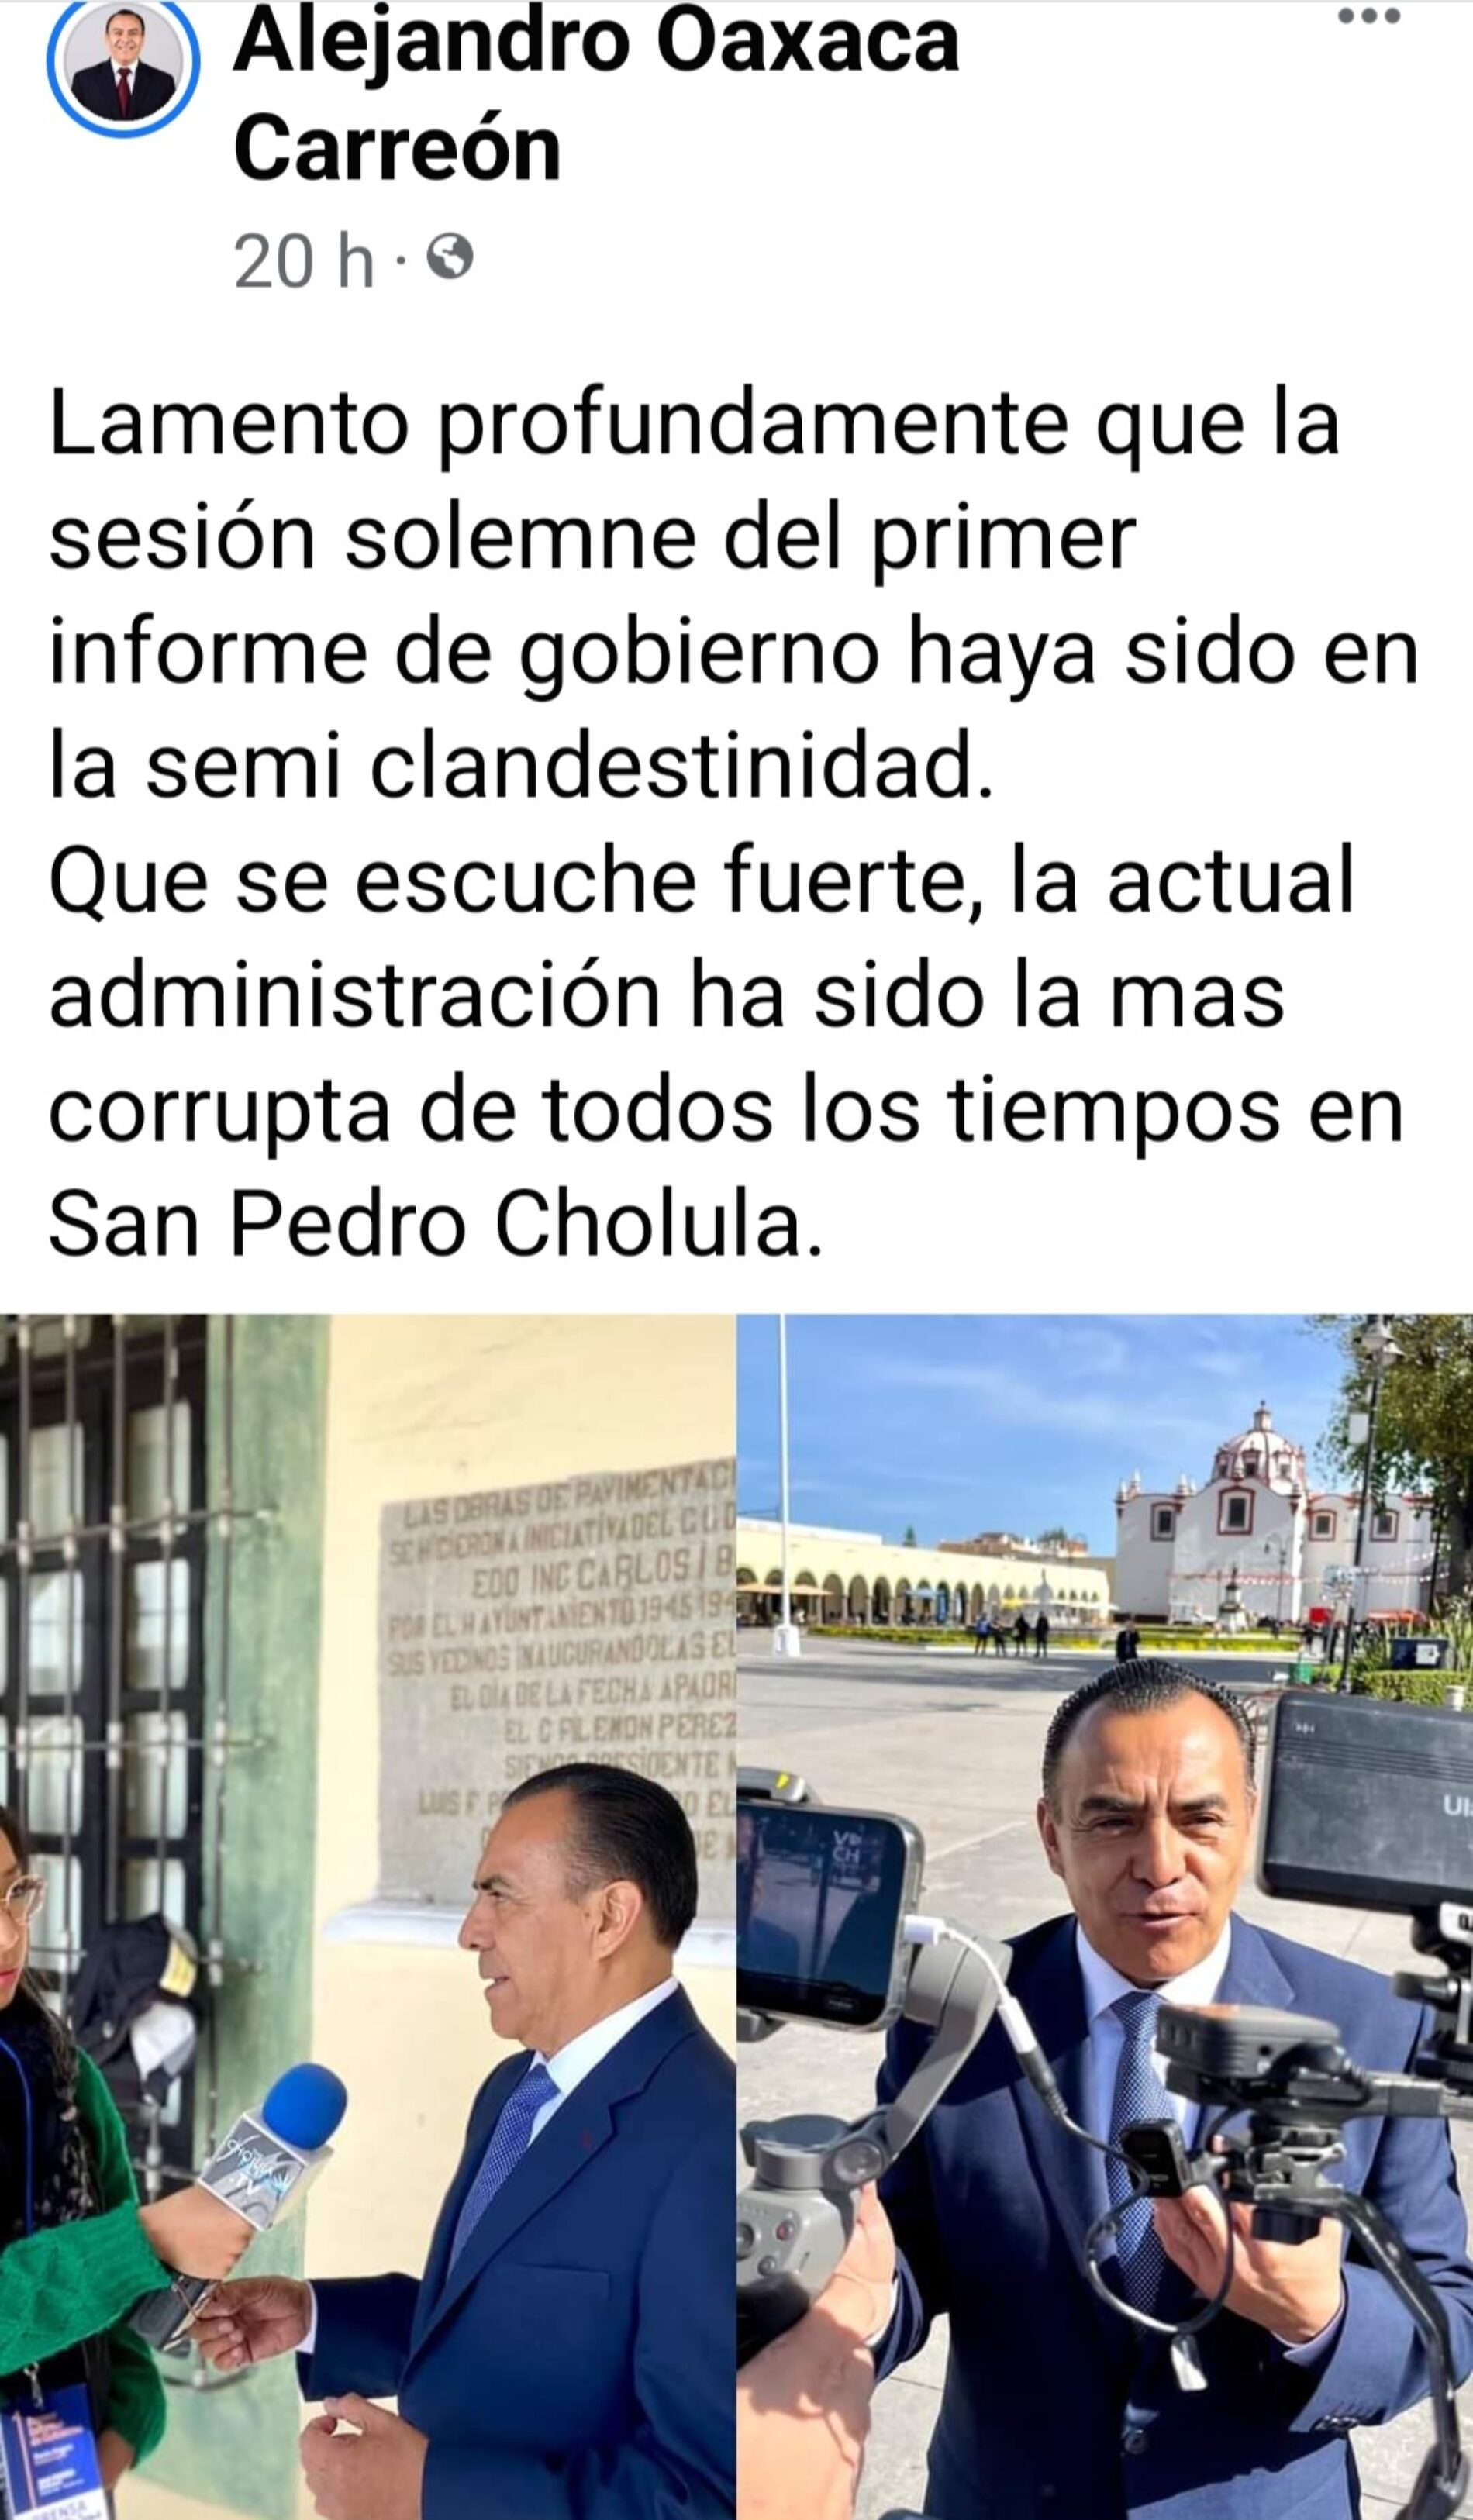 ADMINISTRACIÓN DE CHOLULA, LA MÁS CORRUPTA: REGIDOR